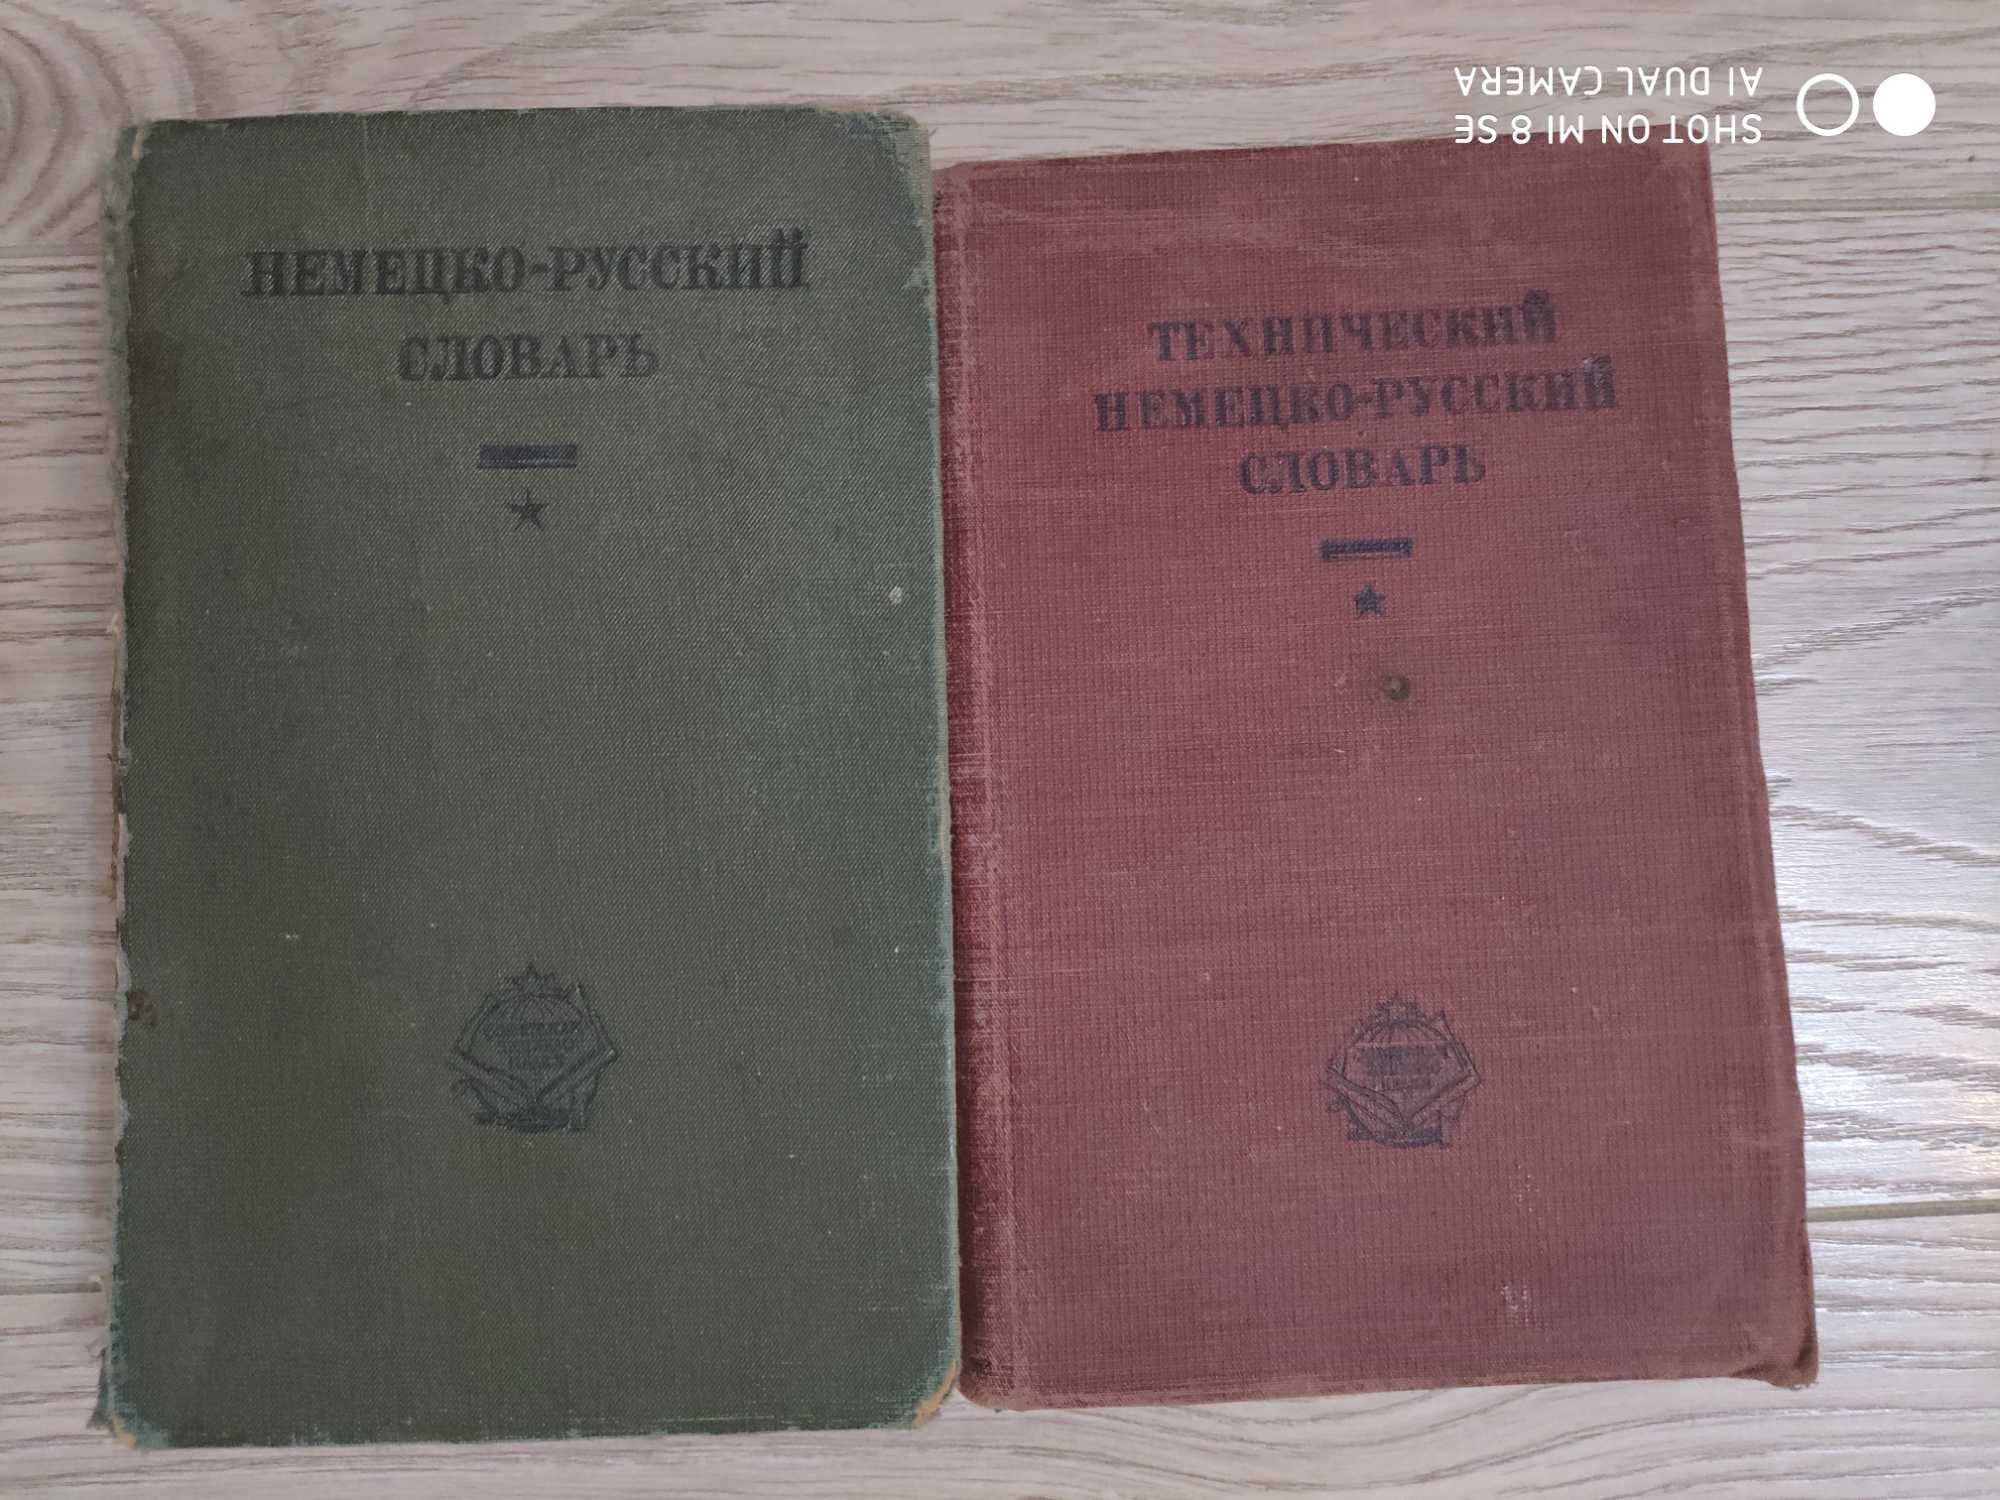 Словари Немецкого языка 1911, 1931-34г.г